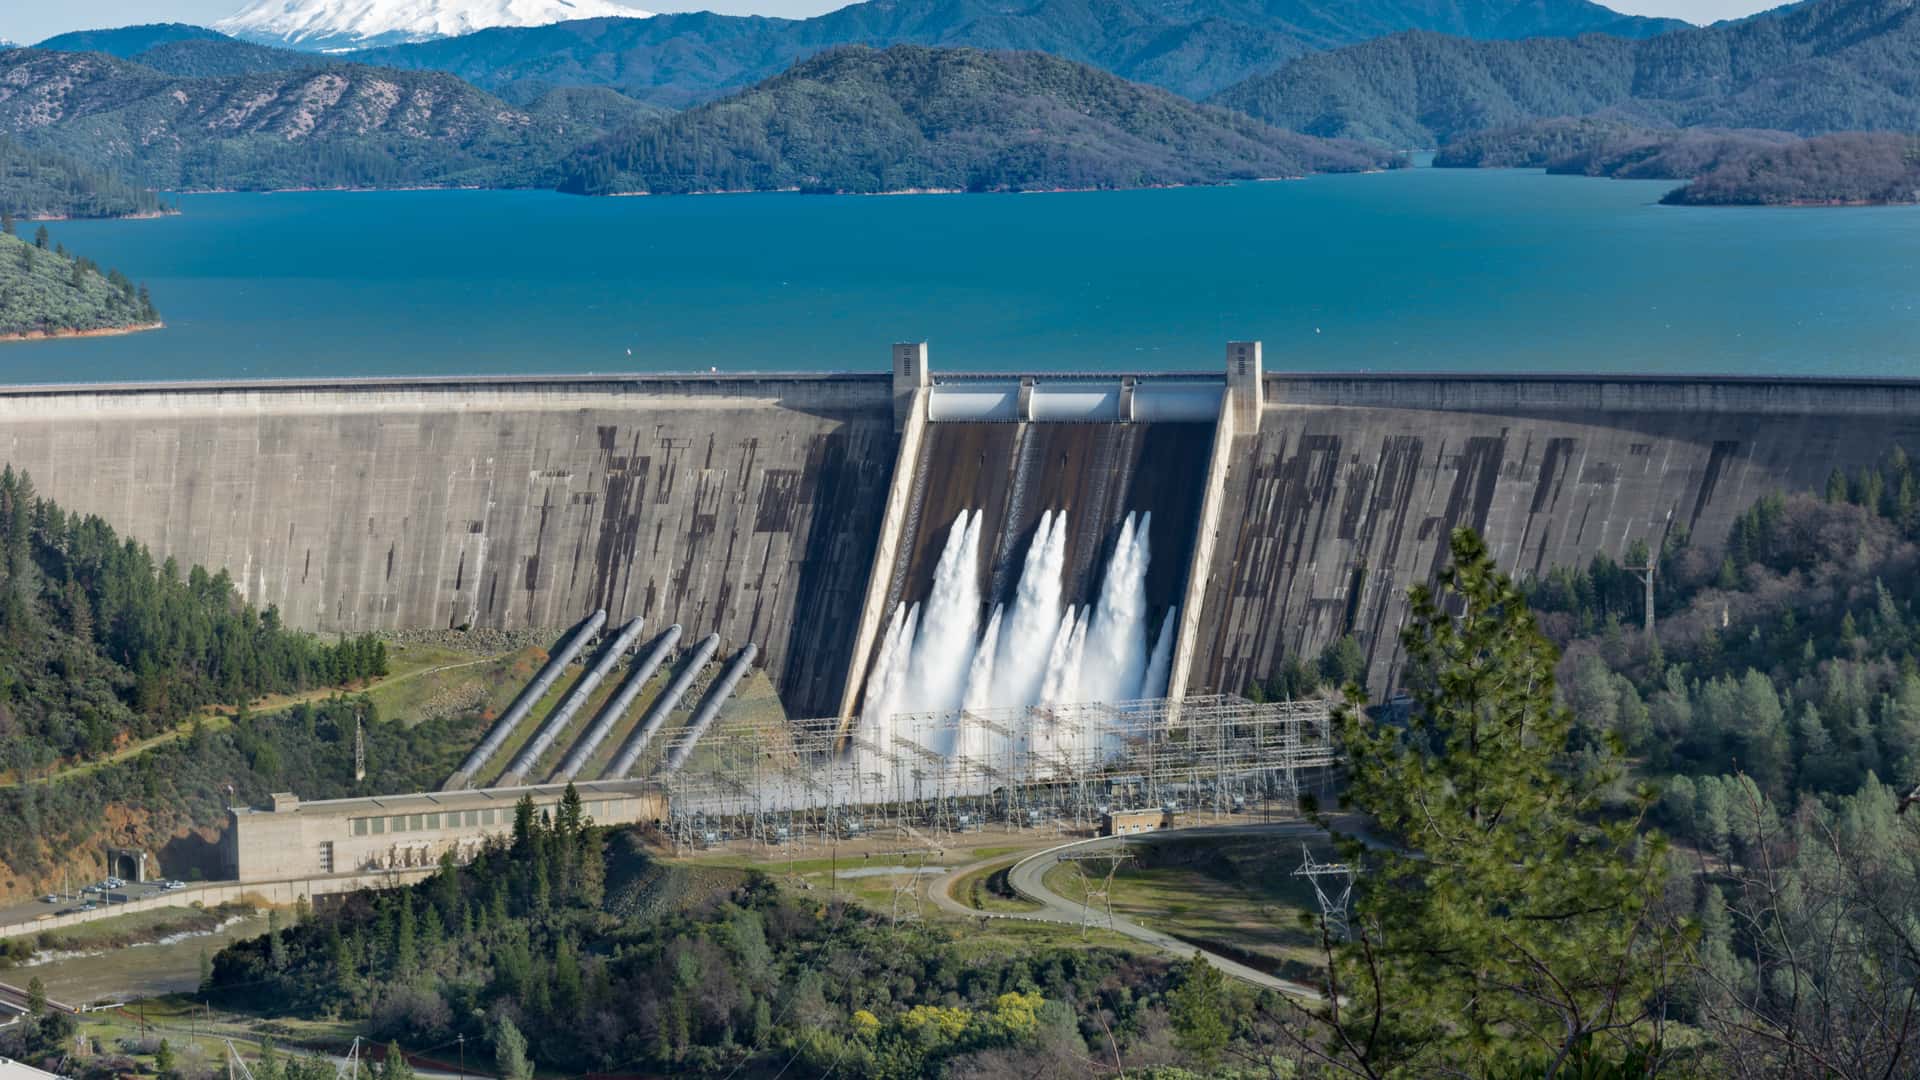 Foto de la presa Shasta en EE.UU. sirve para ilustrar las ventajas y desventajas de la energía hidráulica